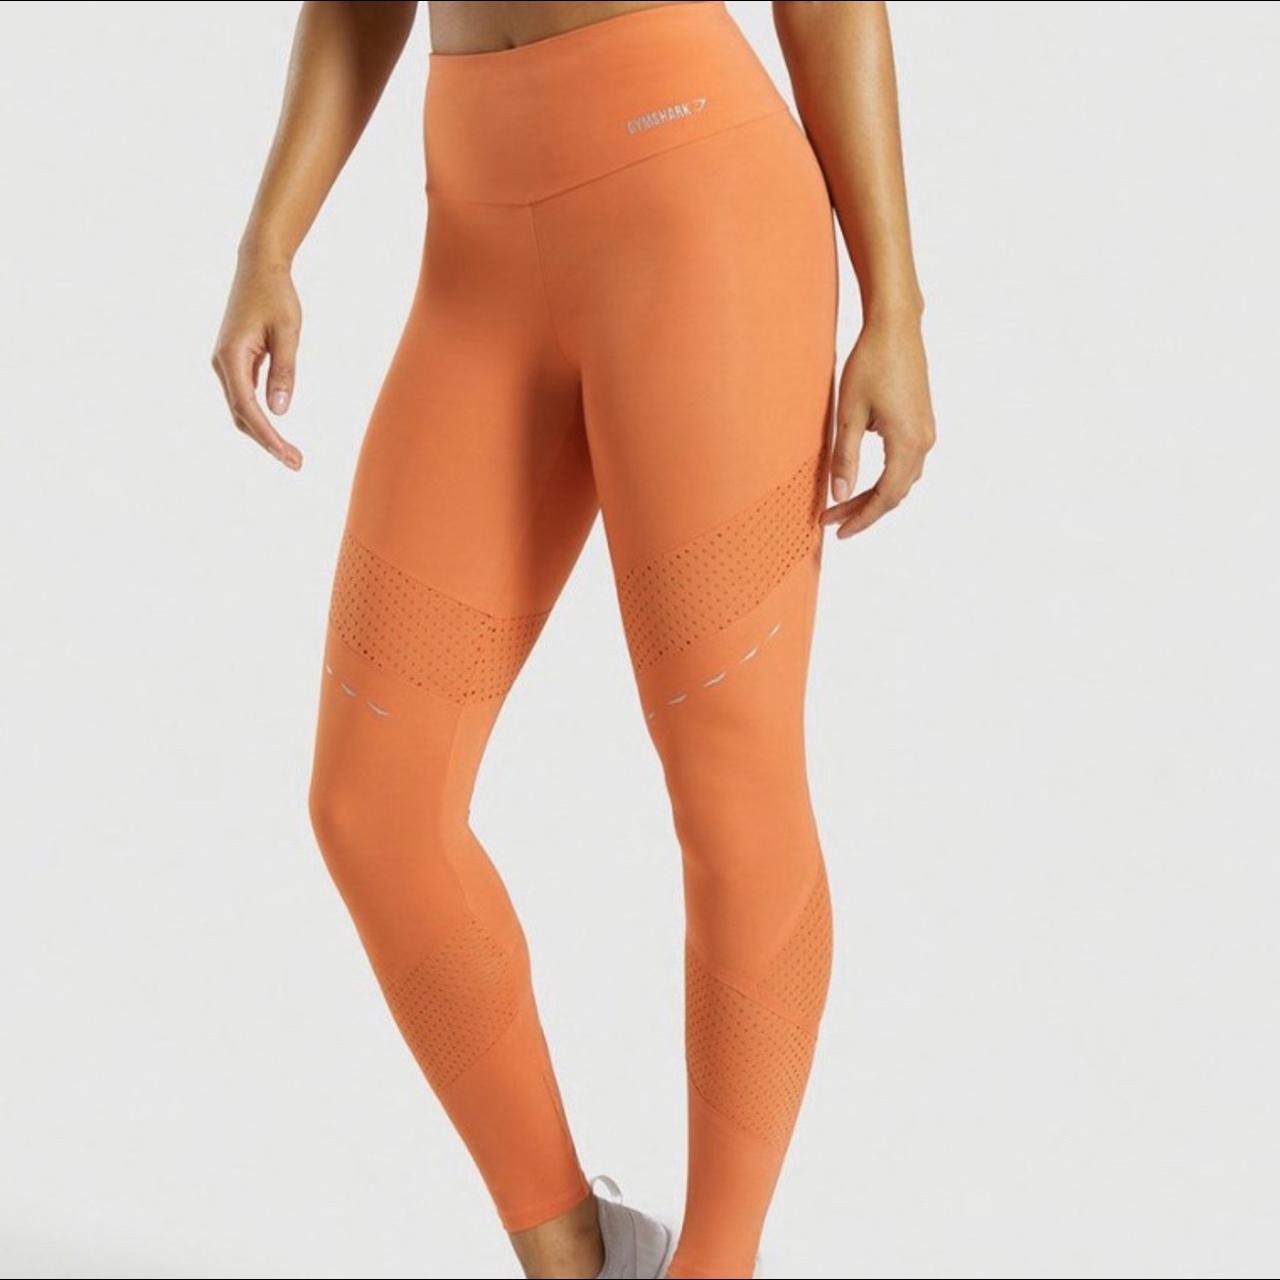 Gymshark orange leggings - size small Slight piling - Depop